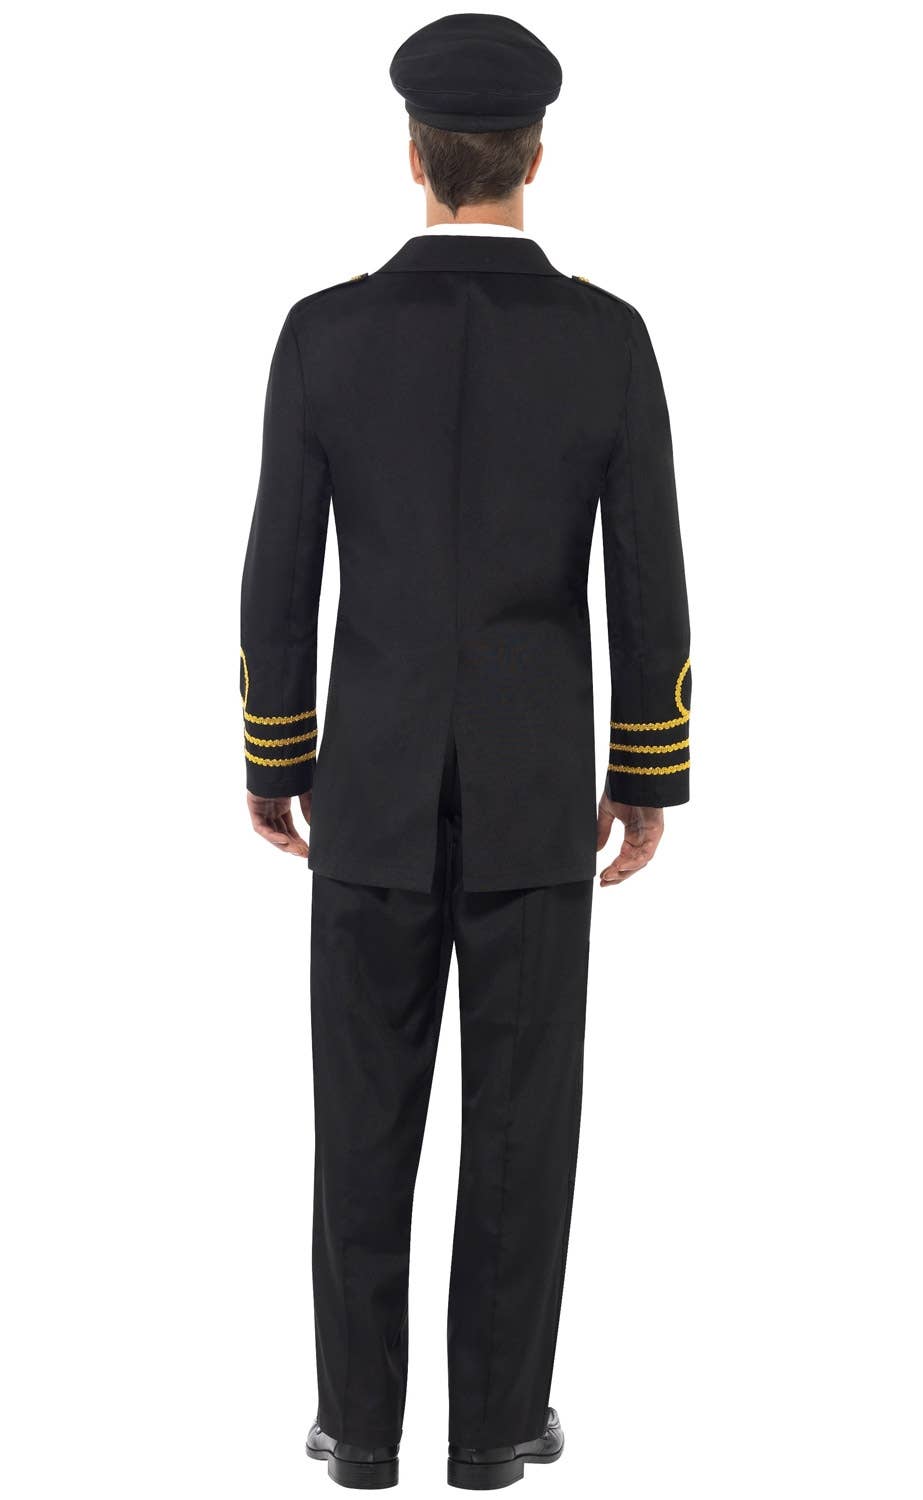 Men's Navy Captain Uniform Fancy Dress Costume Image 2